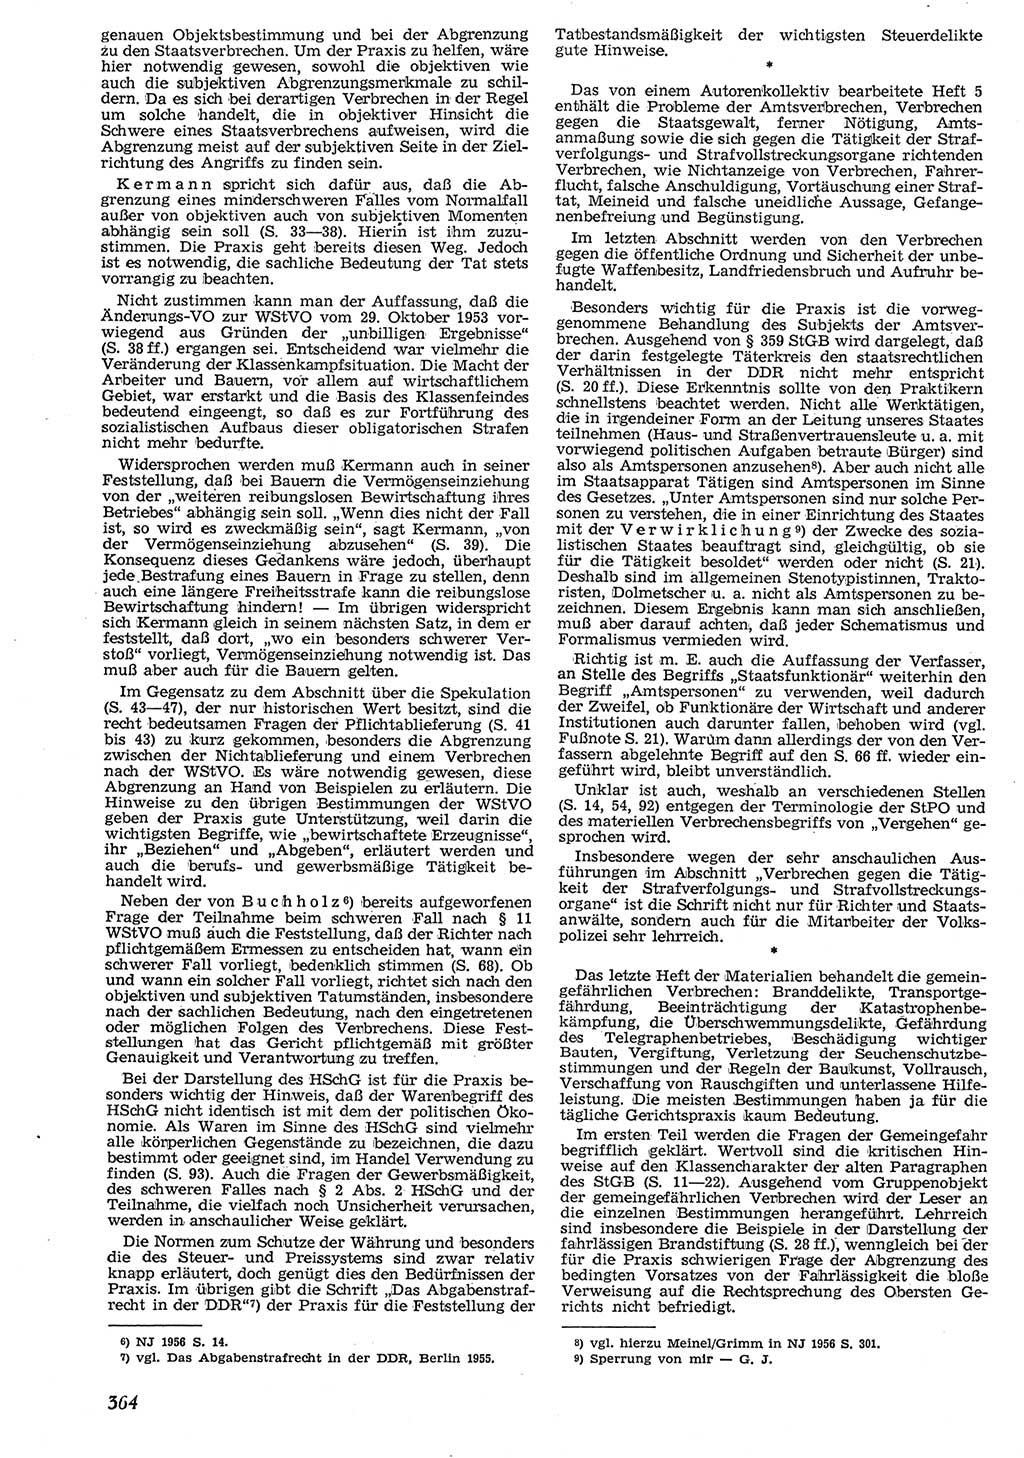 Neue Justiz (NJ), Zeitschrift für Recht und Rechtswissenschaft [Deutsche Demokratische Republik (DDR)], 10. Jahrgang 1956, Seite 364 (NJ DDR 1956, S. 364)